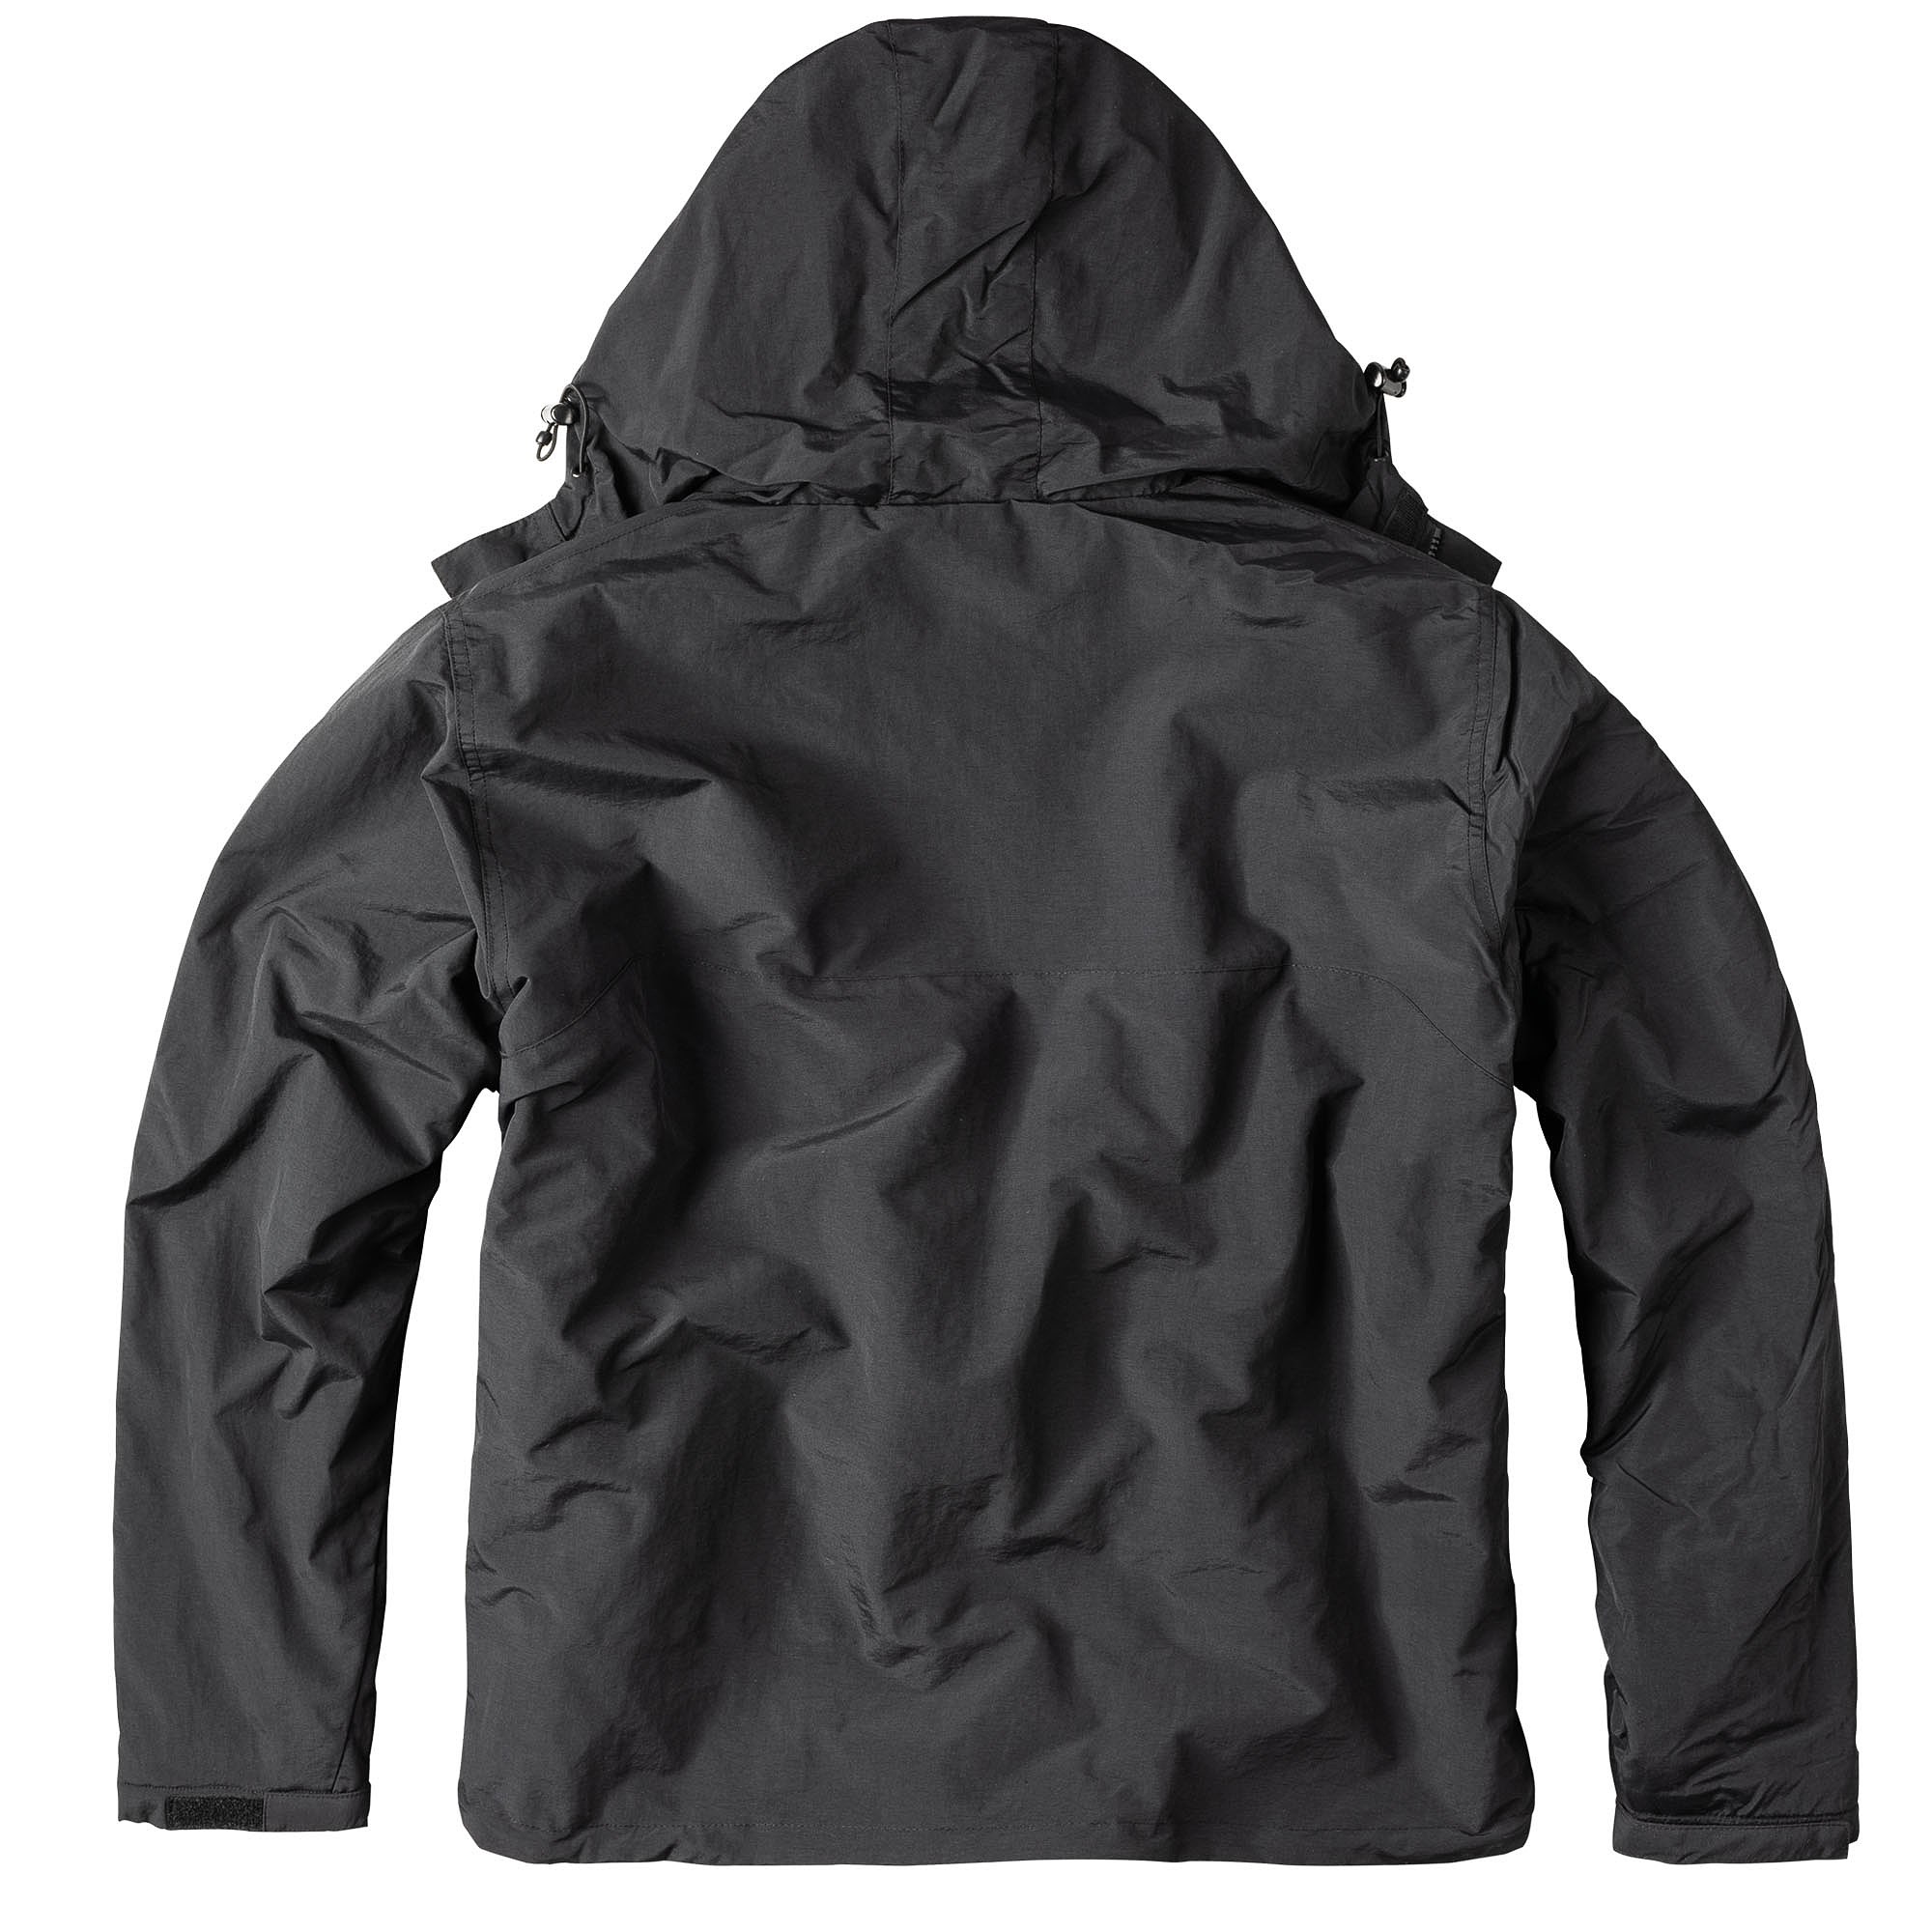 WINDBREAKER ZIPPER Jacket BLACK SURPLUS 20-7002-03 L-11